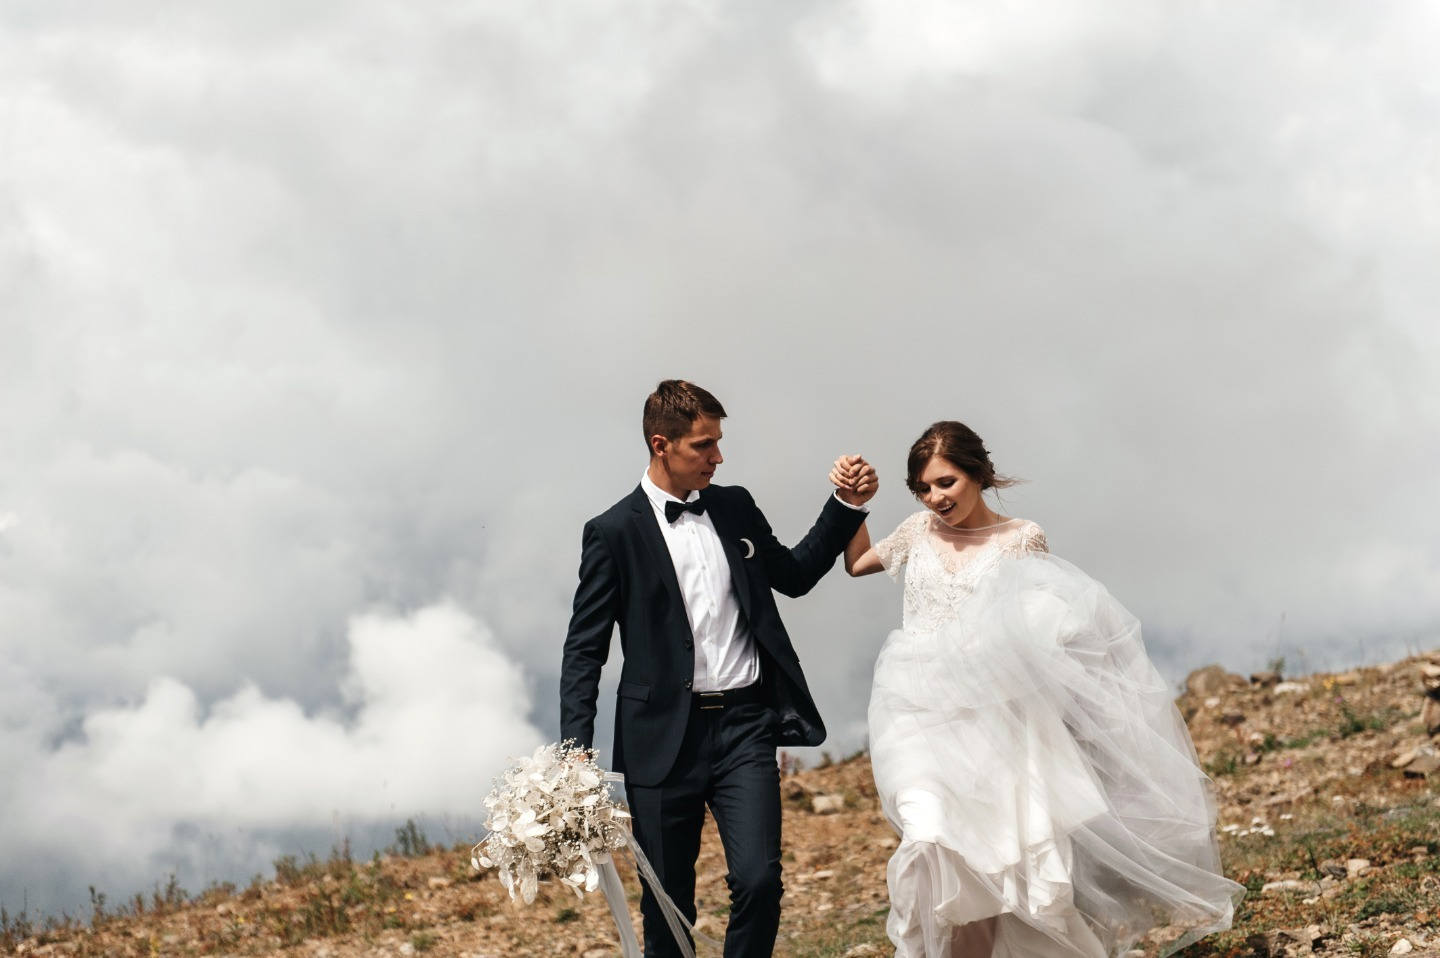 Космос внутри нас: тематическая свадьба в горах